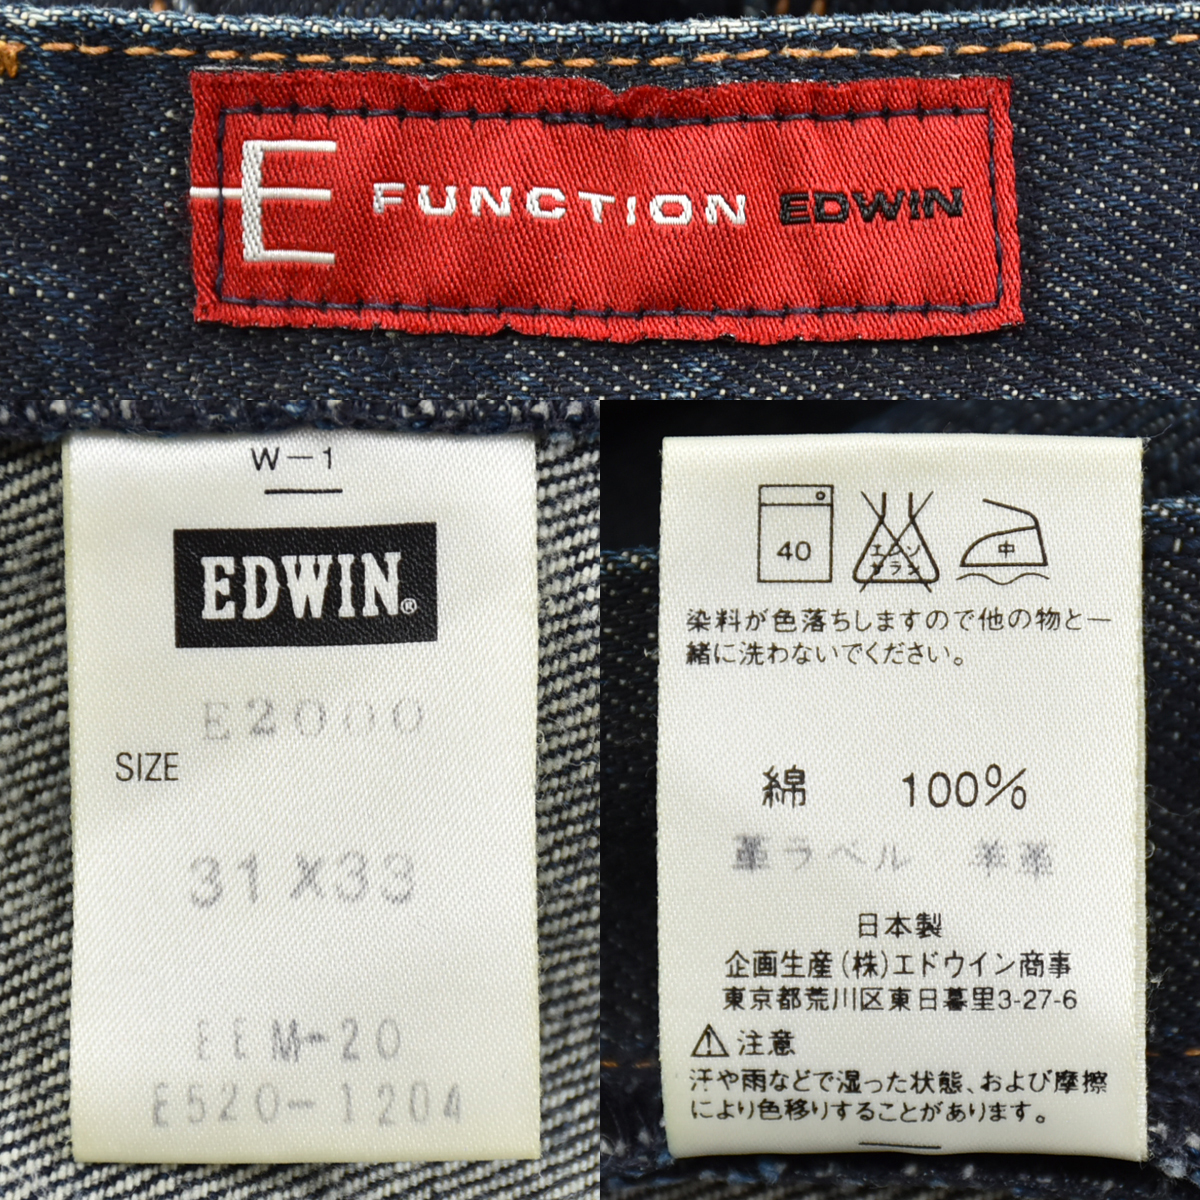 EDWIN E-FUNCTION Edwin * сделано в Японии E2000 цельный разрезание Denim брюки джинсы ji- хлеб индиго мужской 31